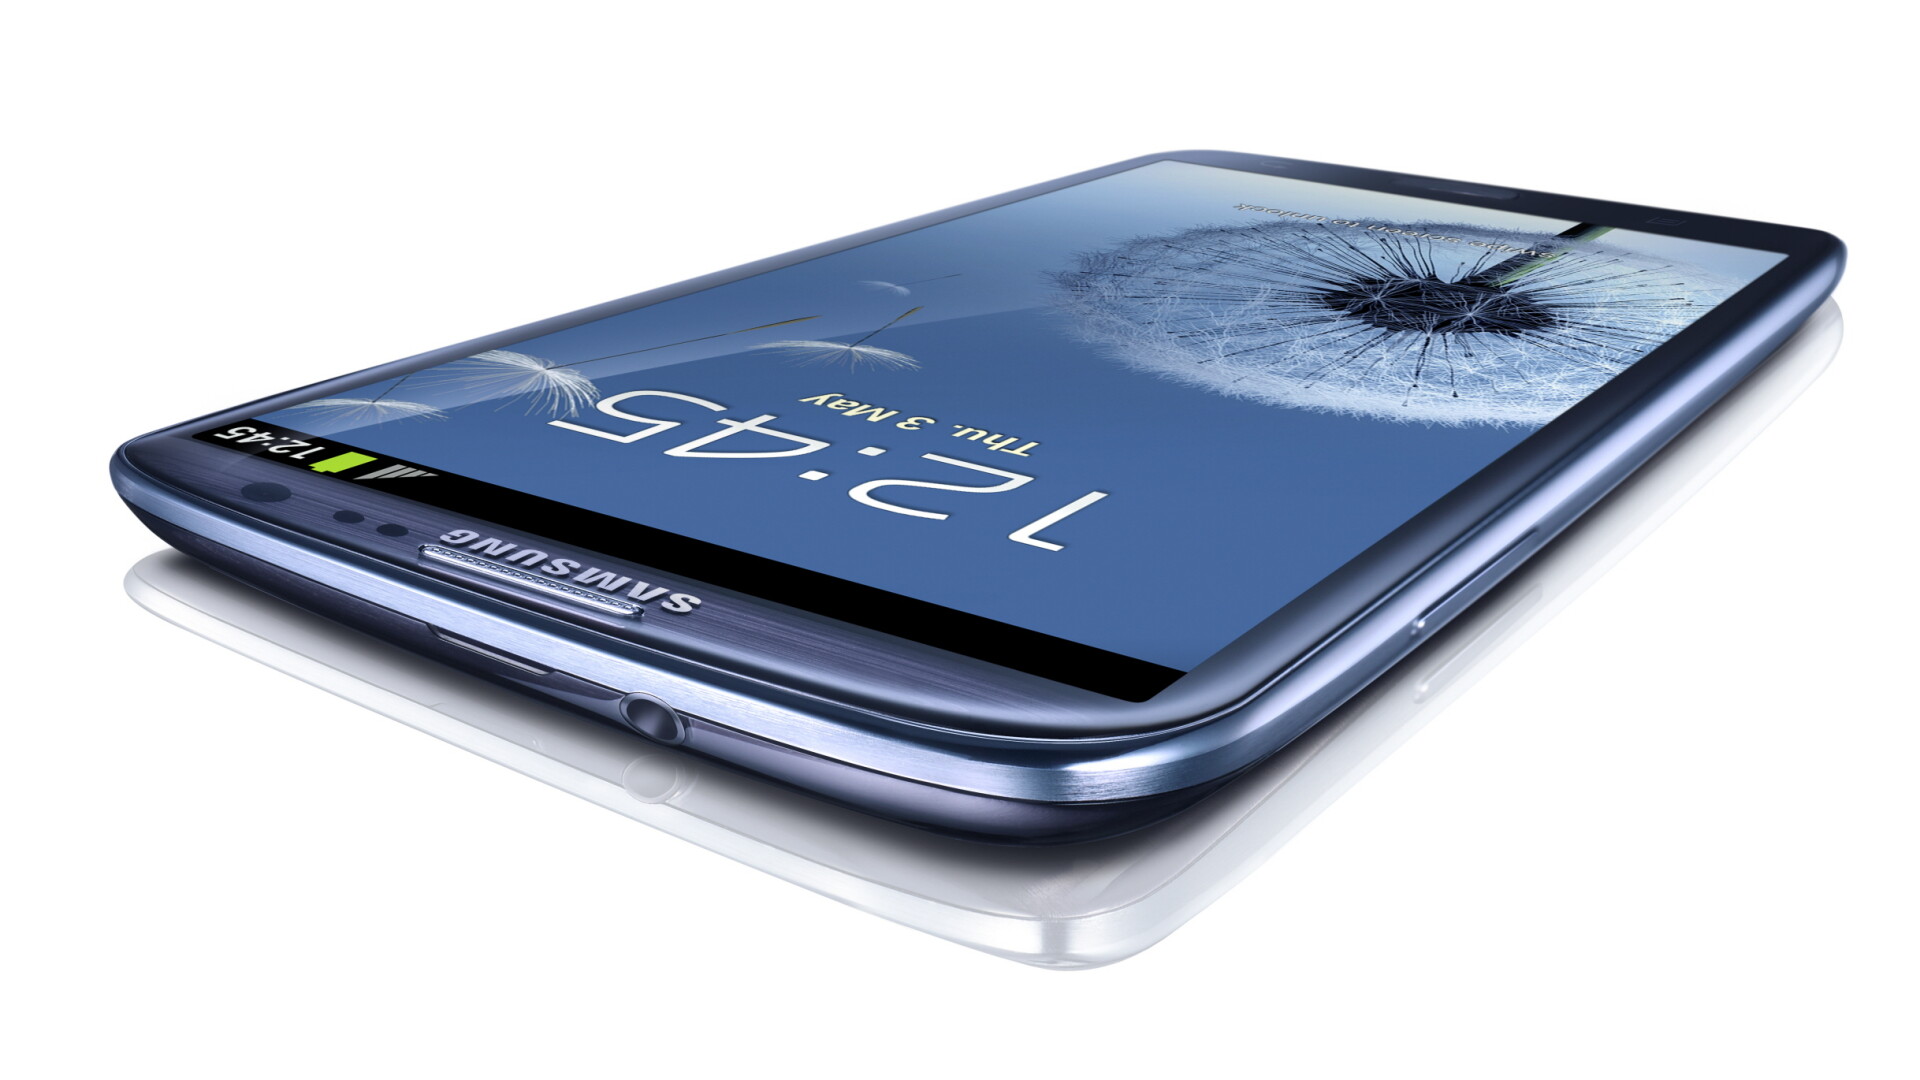 Samsung Galaxy S III - 4